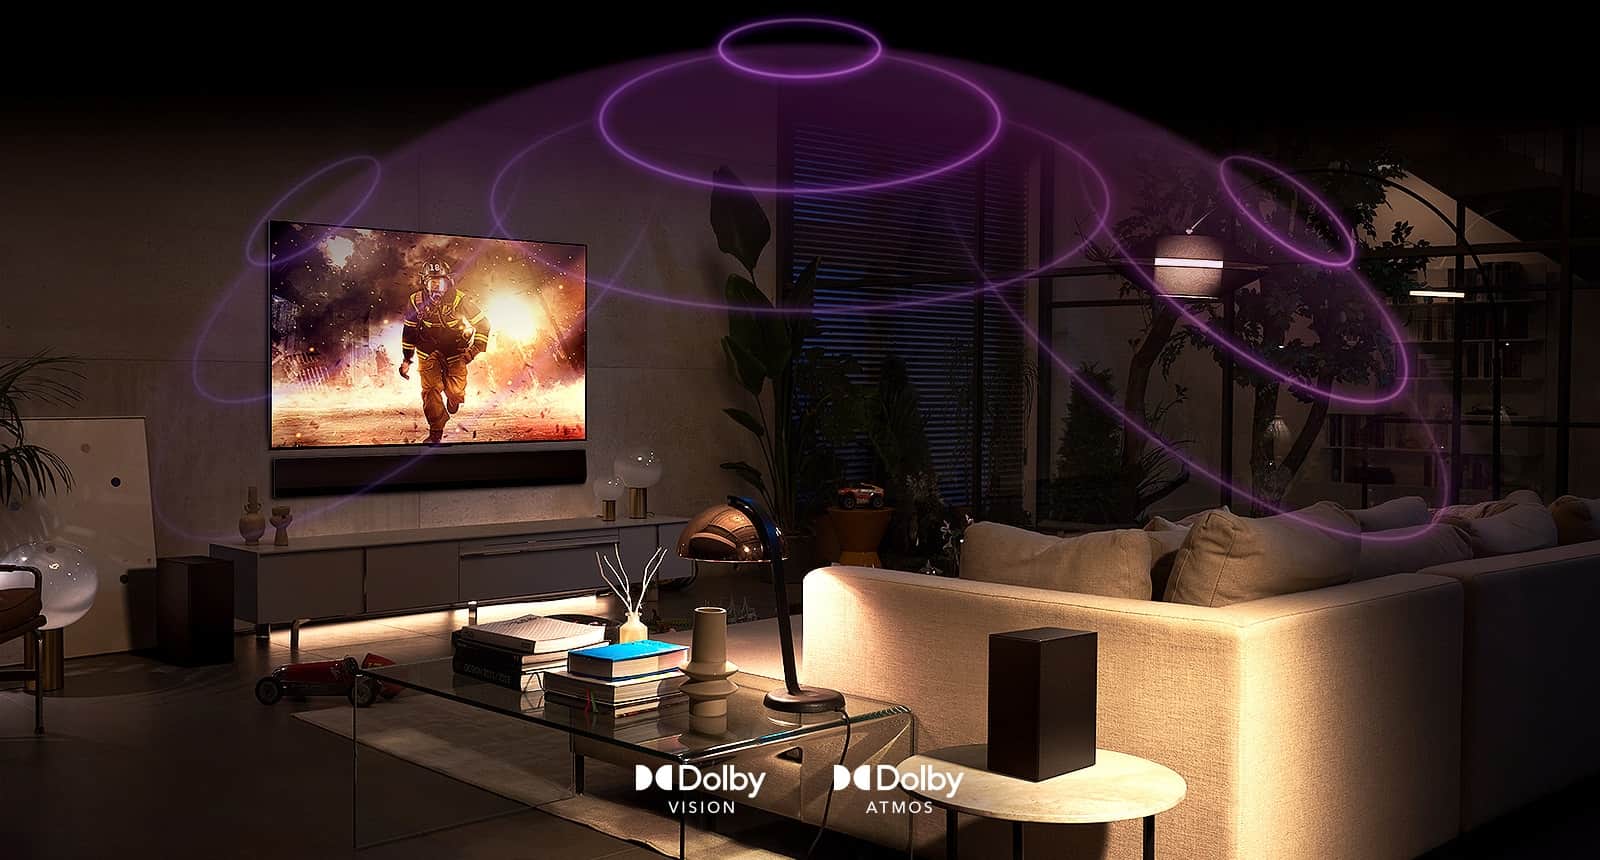 Zdjęcie telewizora LG OLED w pokoju przedstawiającego scenę z filmu akcji. Fale dźwiękowe tworzą kopułę między kanapą i telewizorem, przedstawiając wciągający dźwięk przestrzenny.